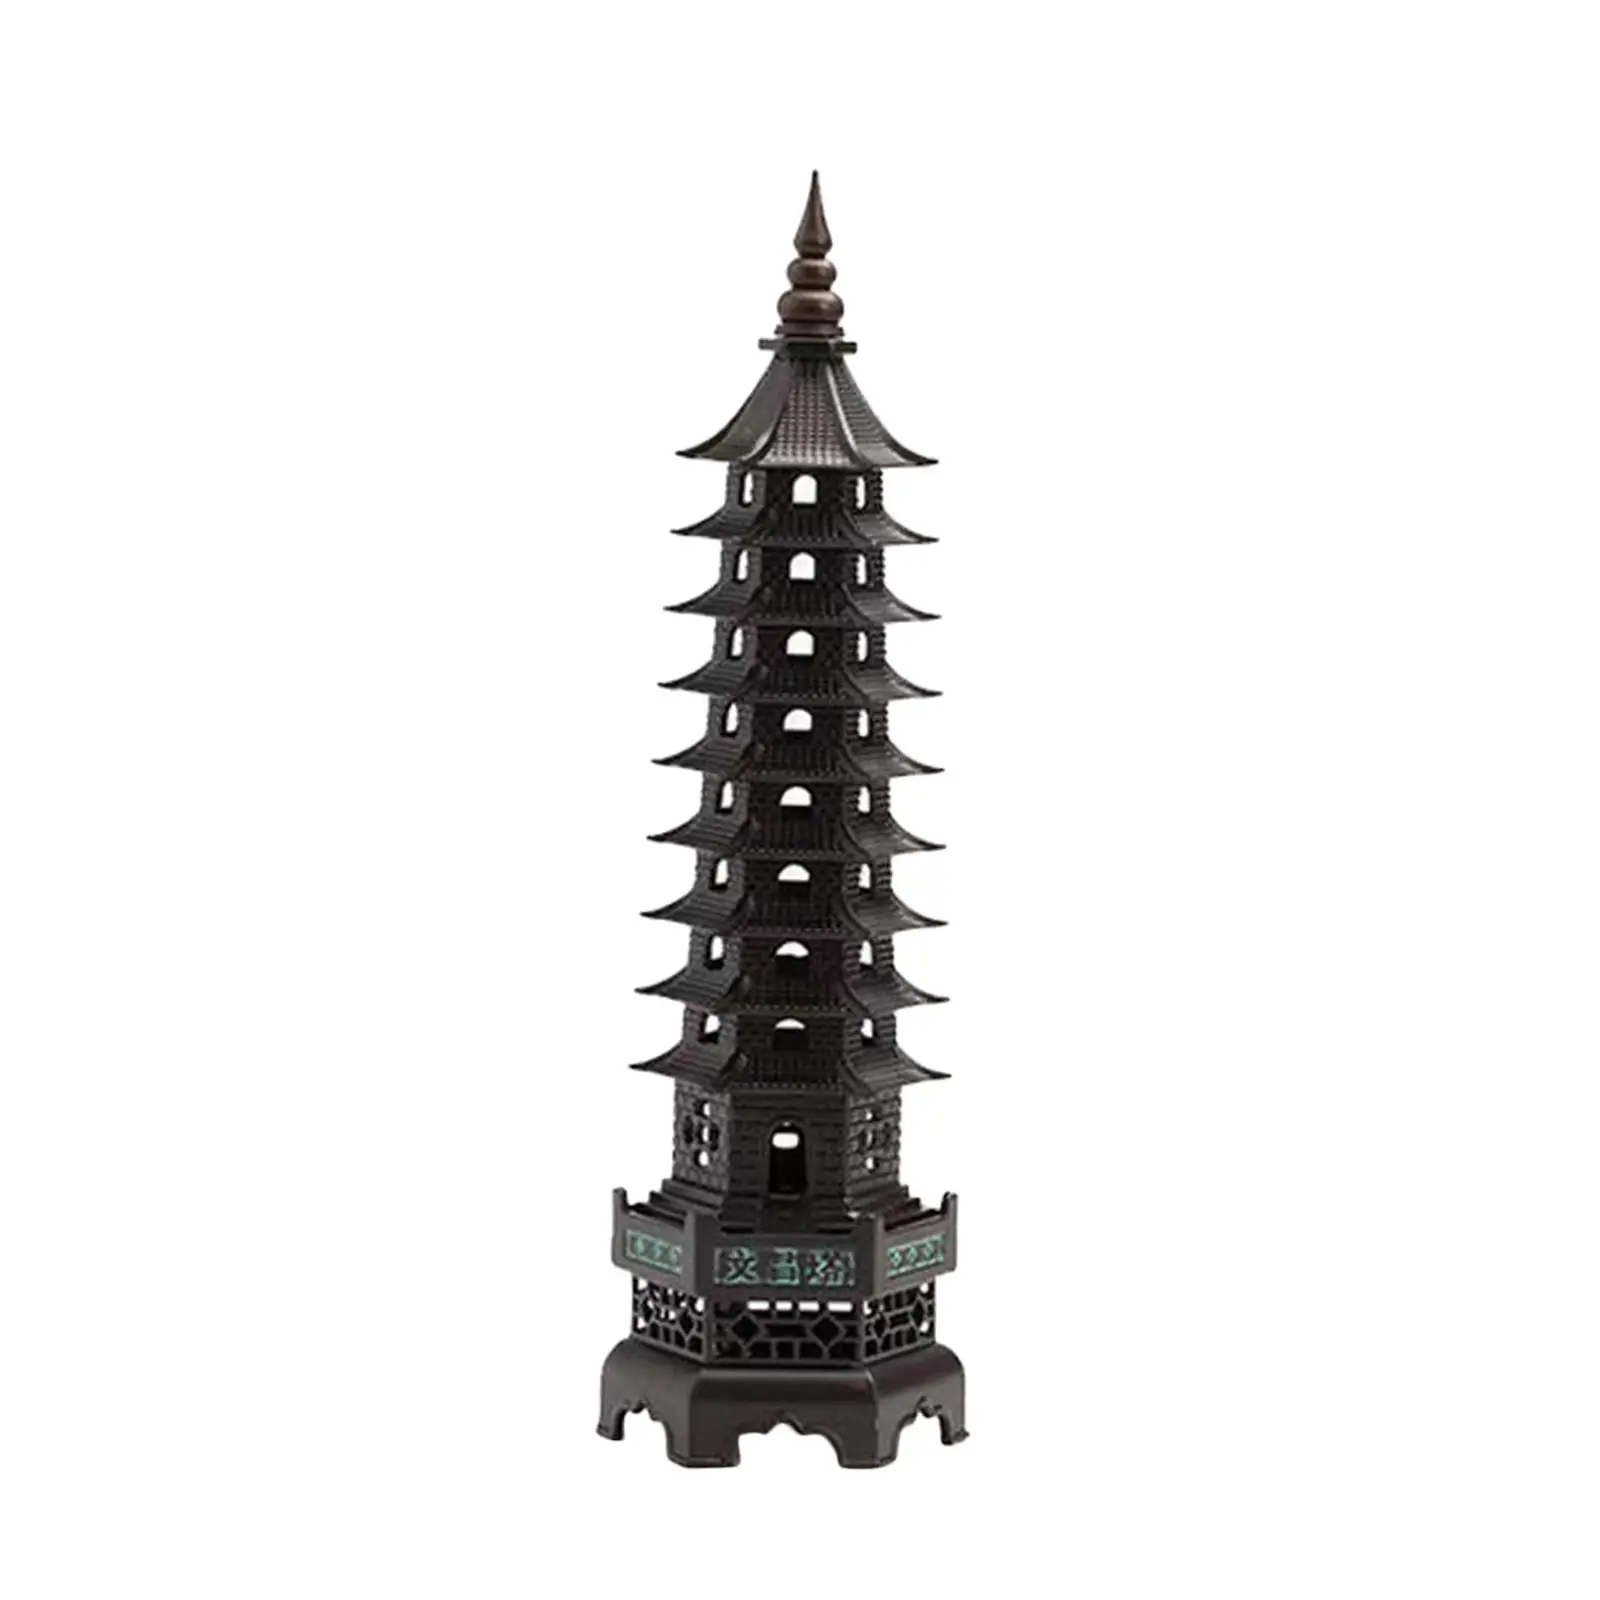 Incense Holder Decorative Decor Craft Tower Incense Burner for Meditation